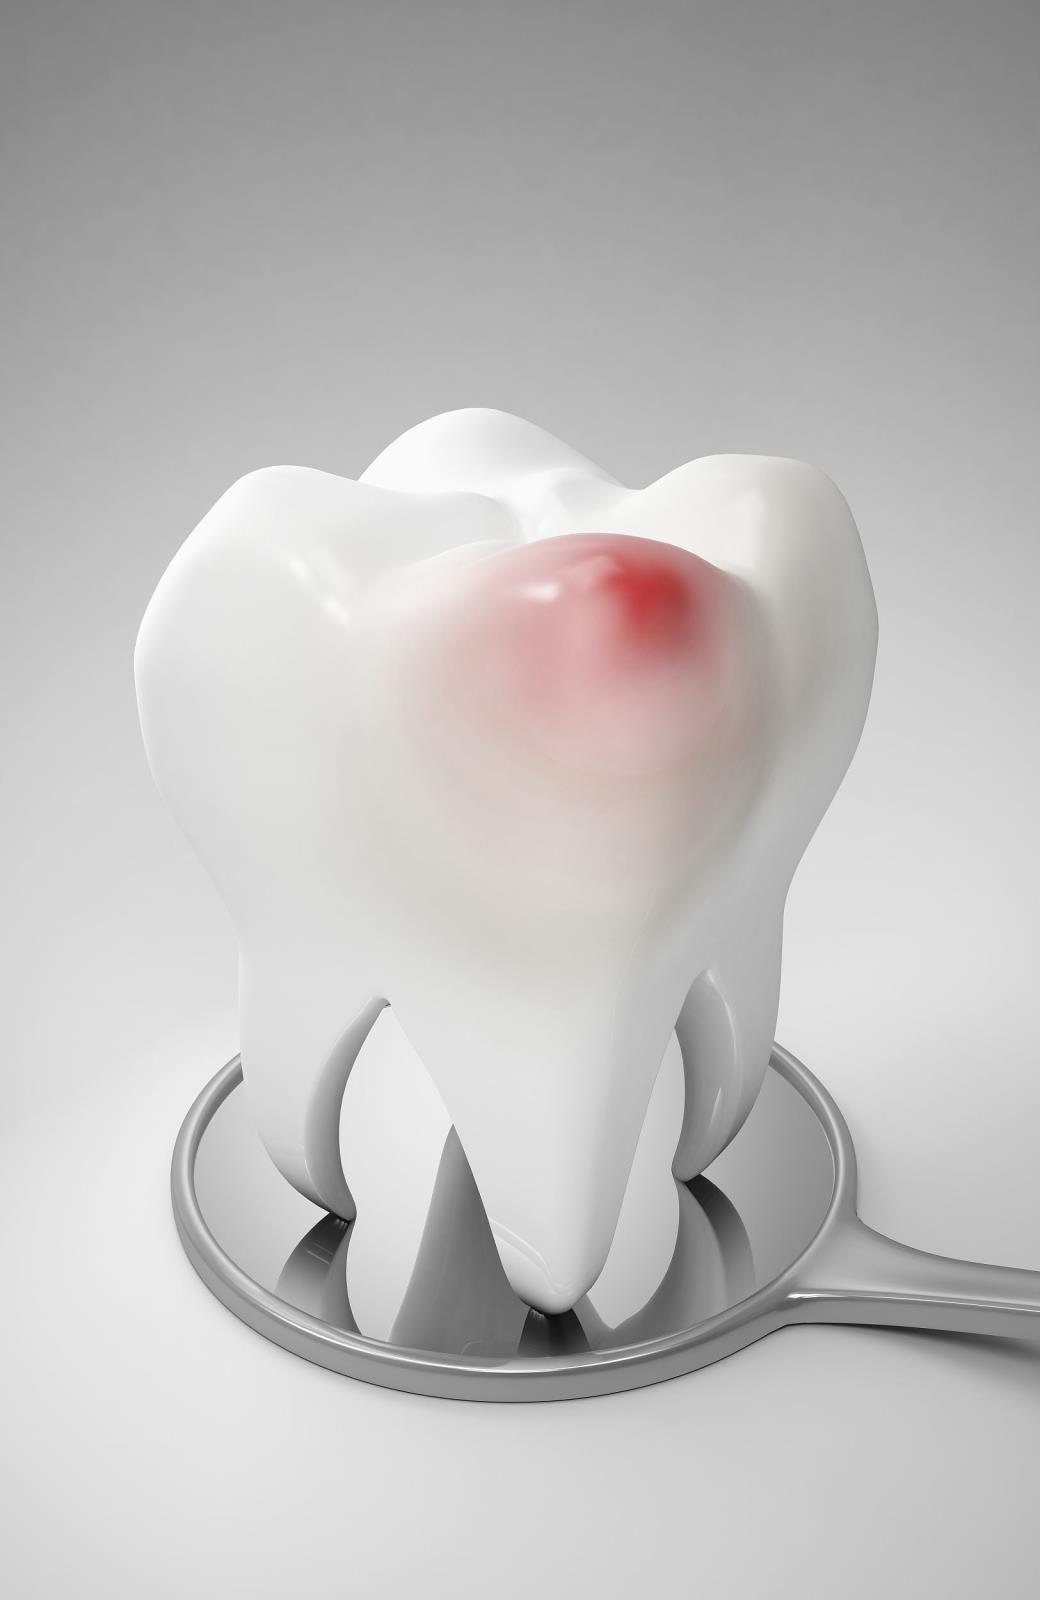 居家(jiā)隔離(lí)期間牙齒出問題，怎麼辦？